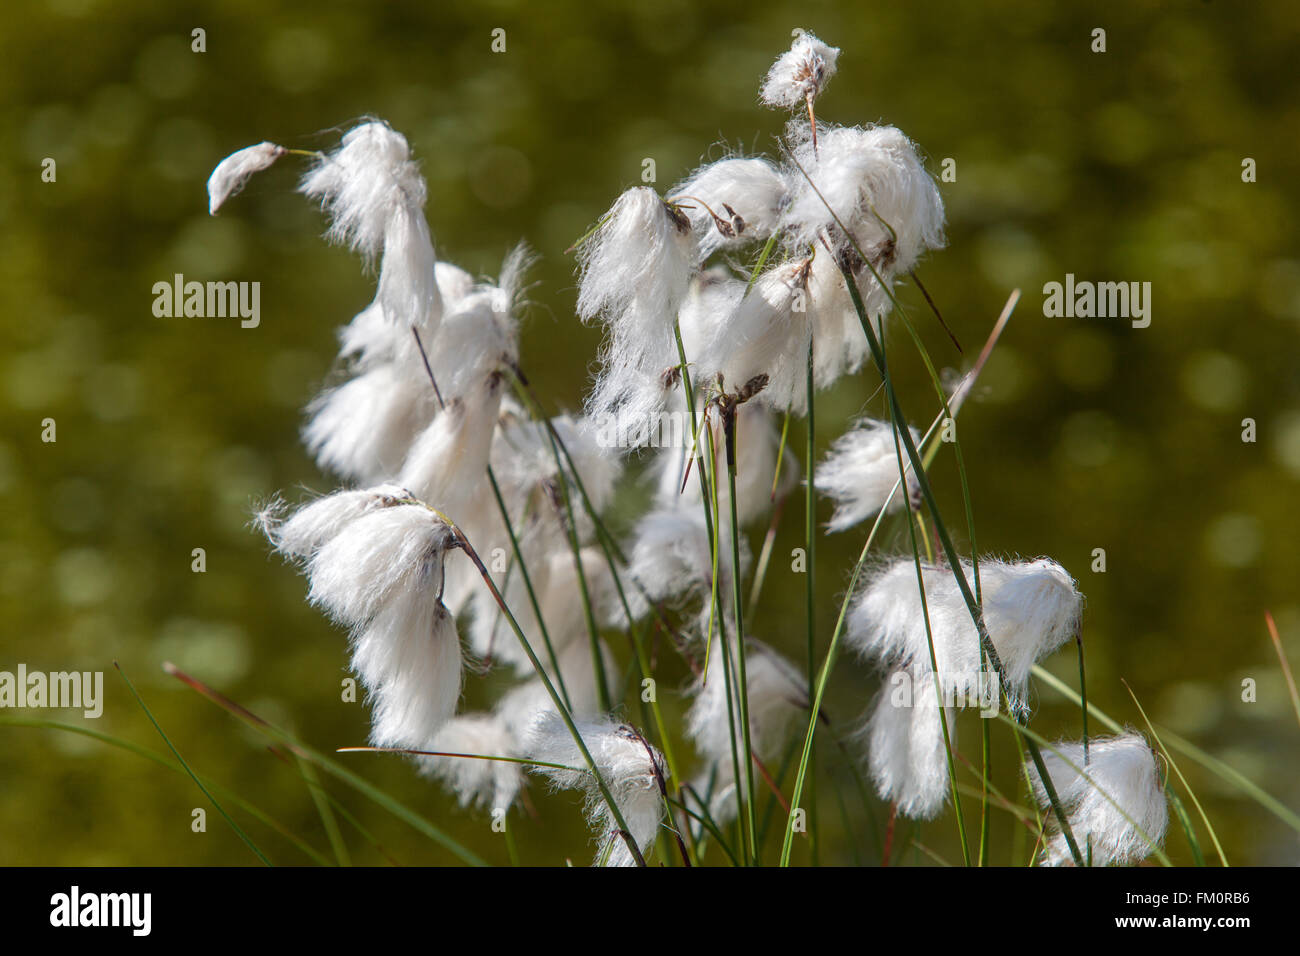 Cotton grass, Eriophorum vaginatum peat bog flowers Stock Photo